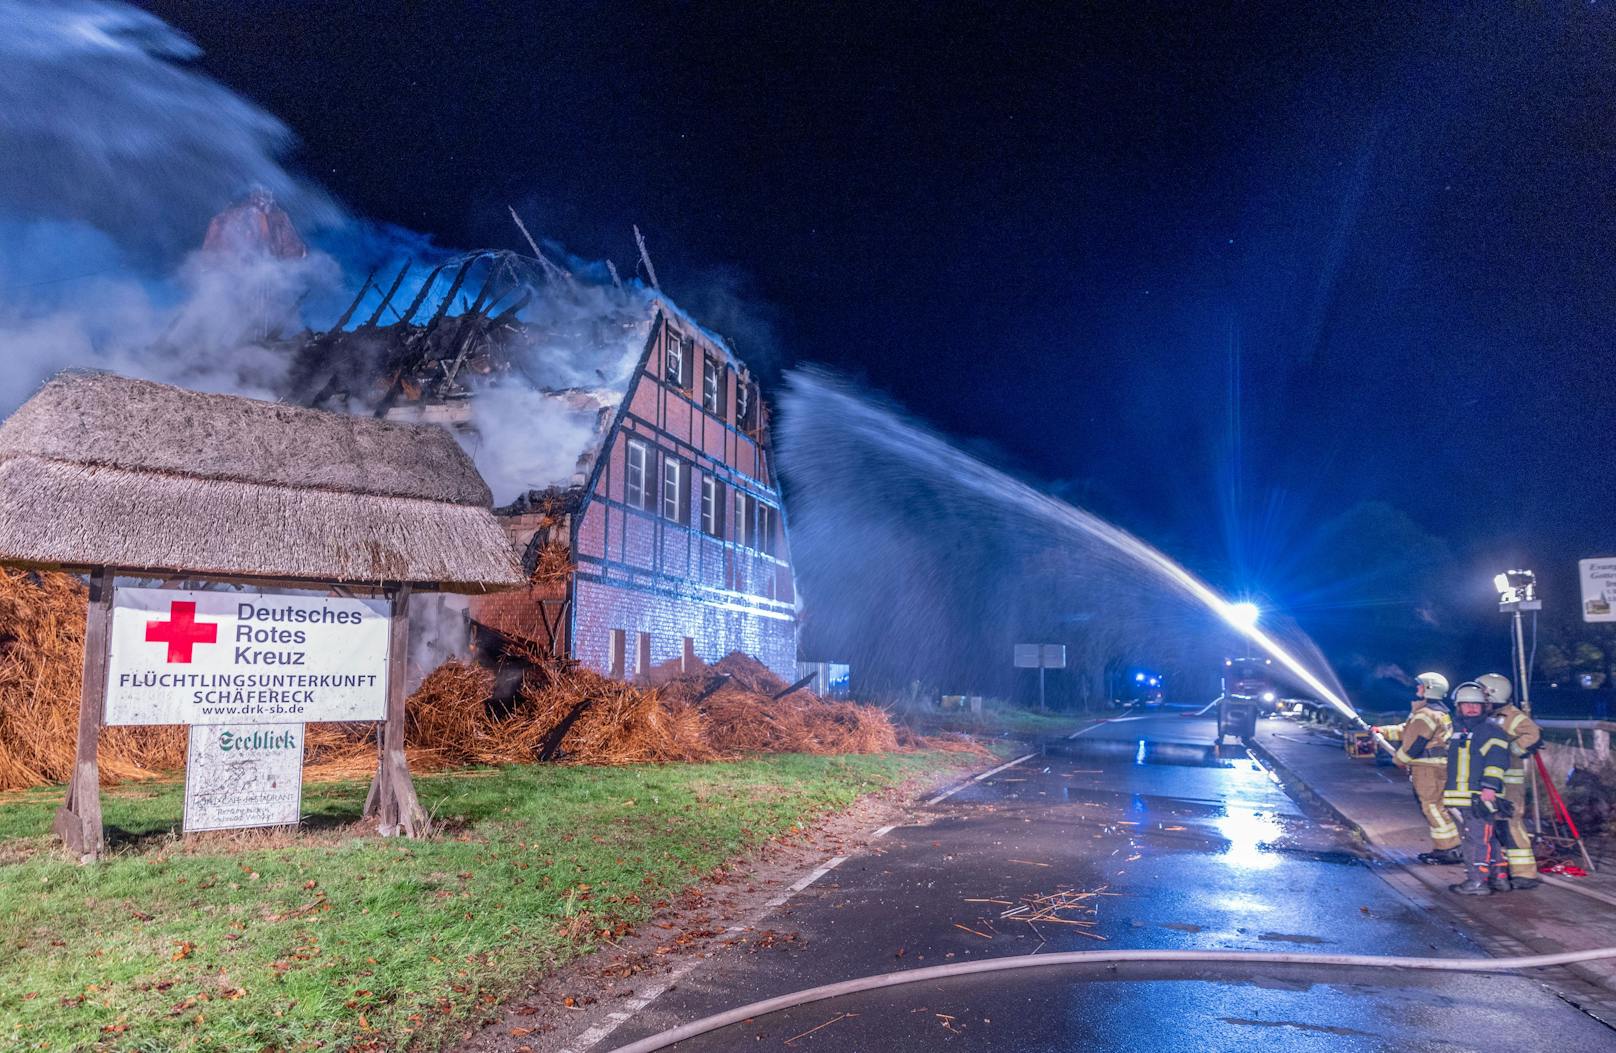 ...das reetgedeckte Gebäude von den Flammen fast vollständig vernichtet.